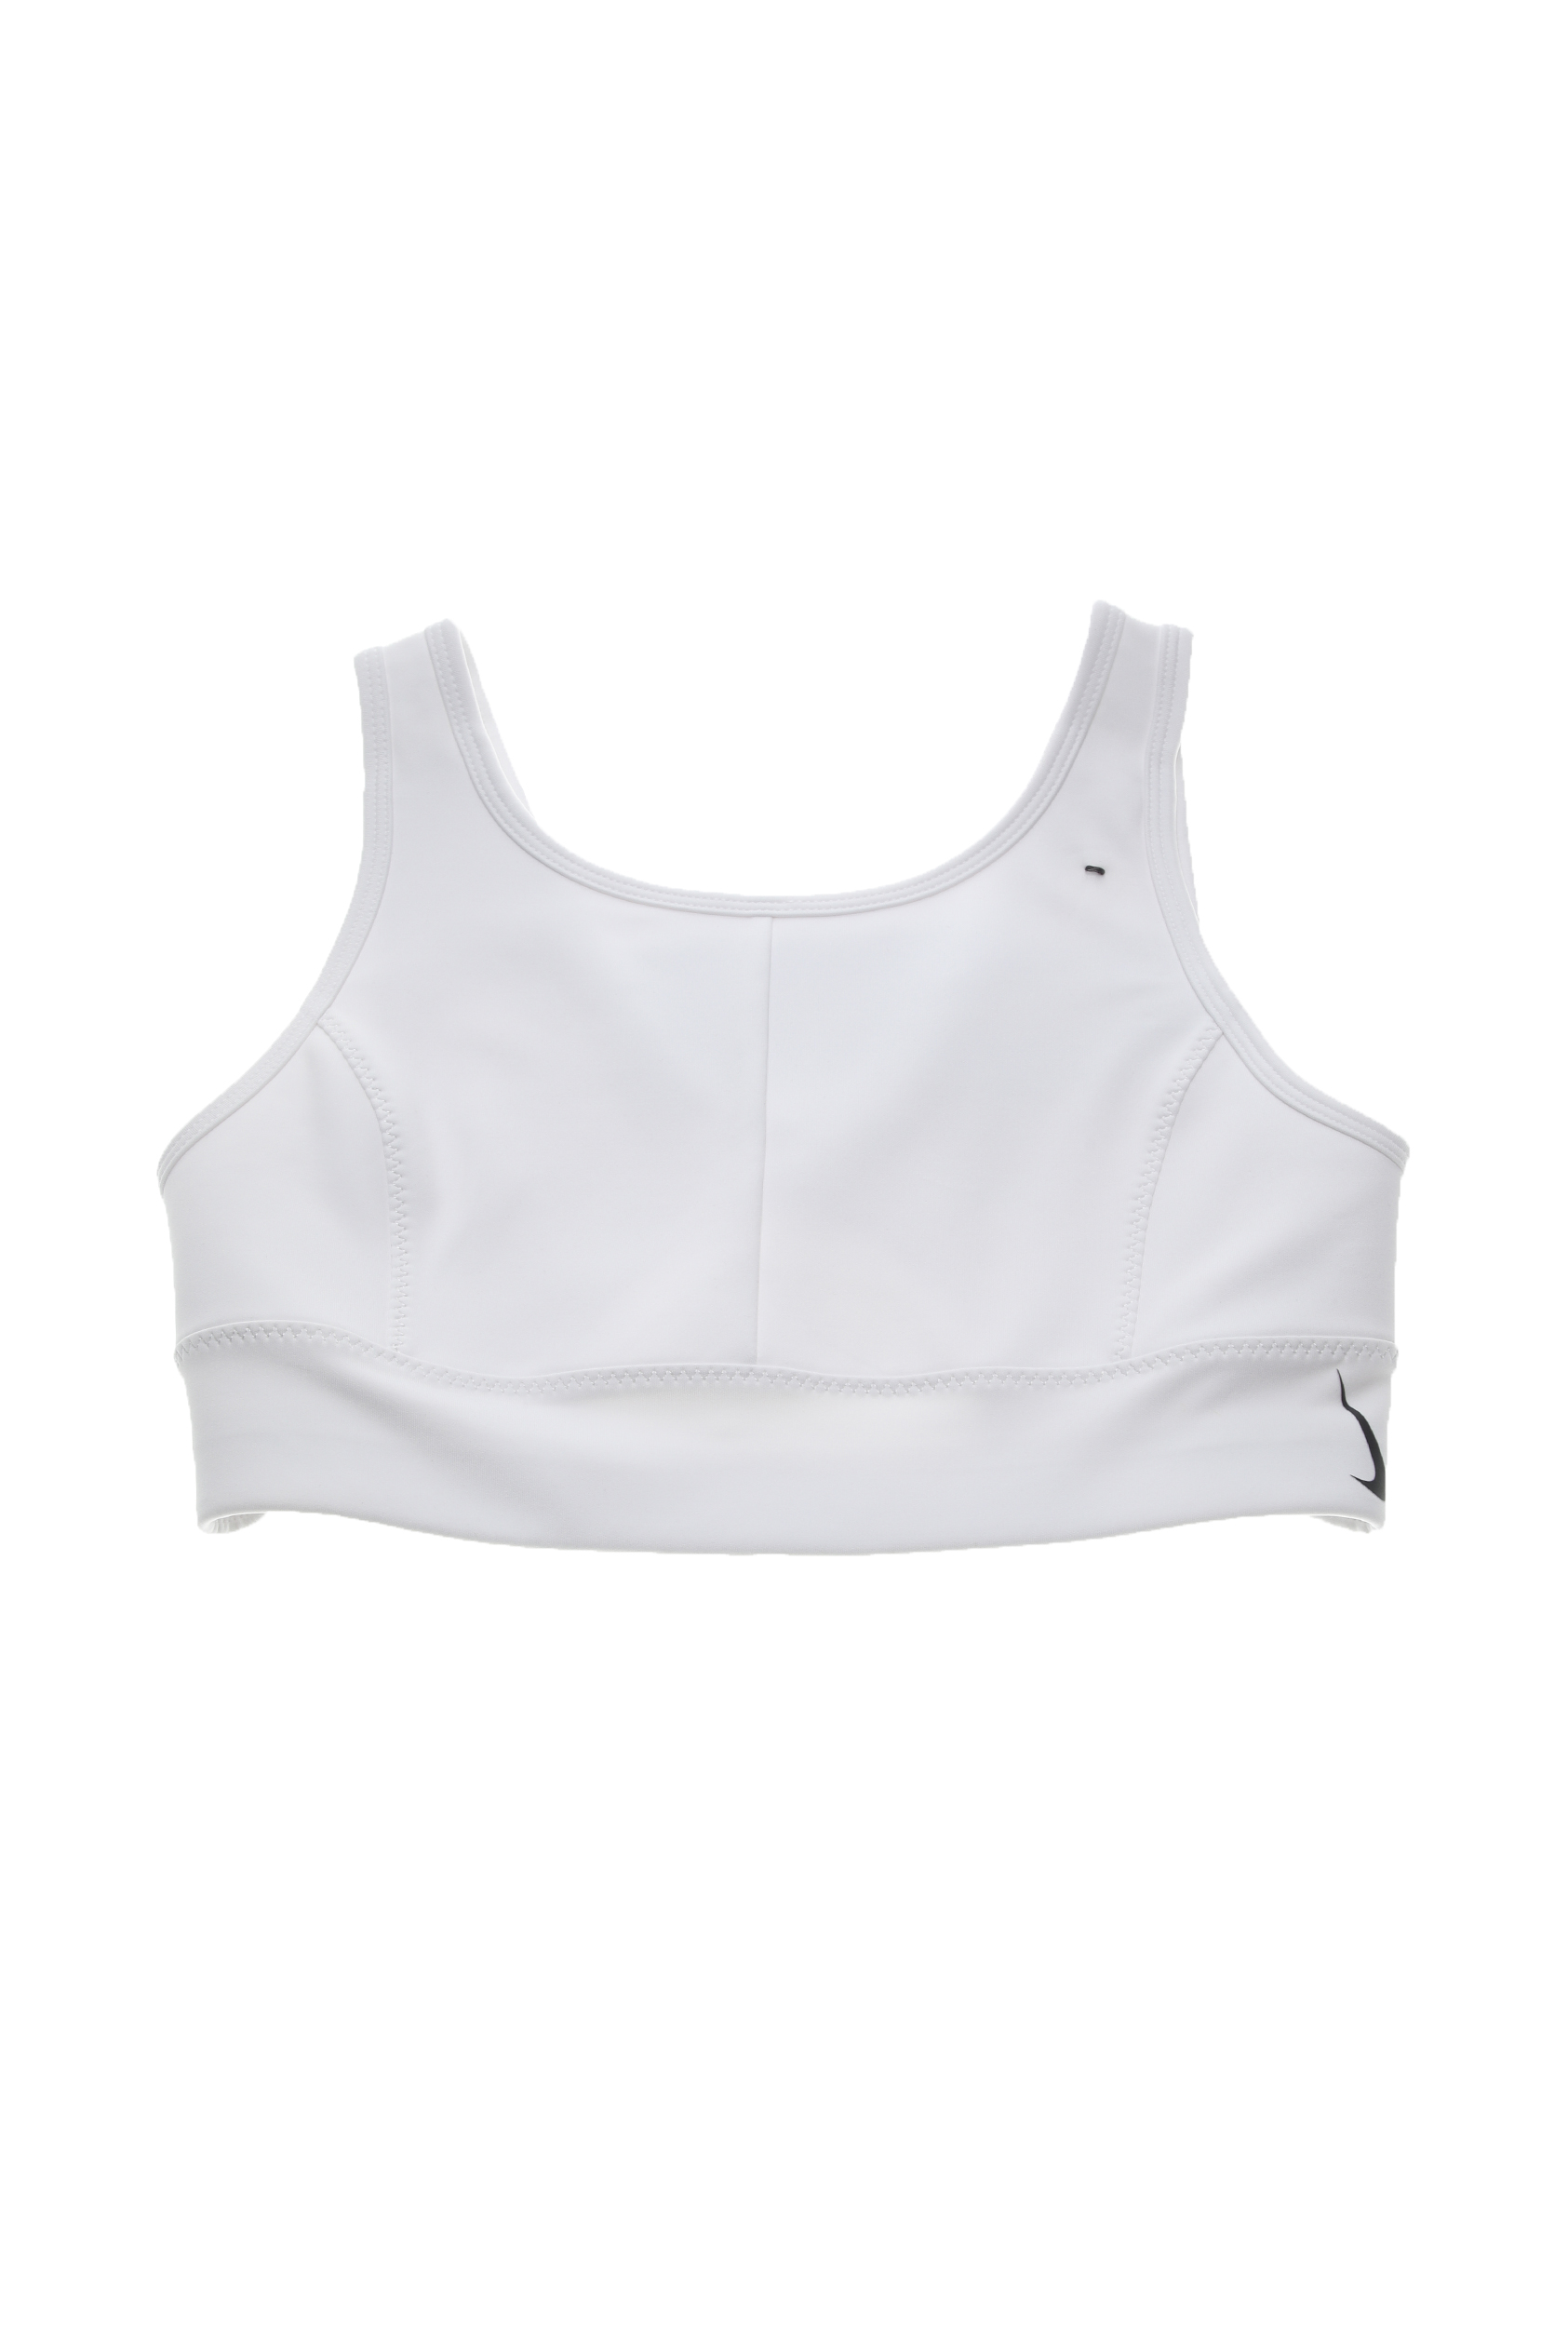 Παιδικά/Girls/Ρούχα/Αθλητικά NIKE - Παιδικό μπουστάκι NIKE SWOOSH LUXE BRA λευκό